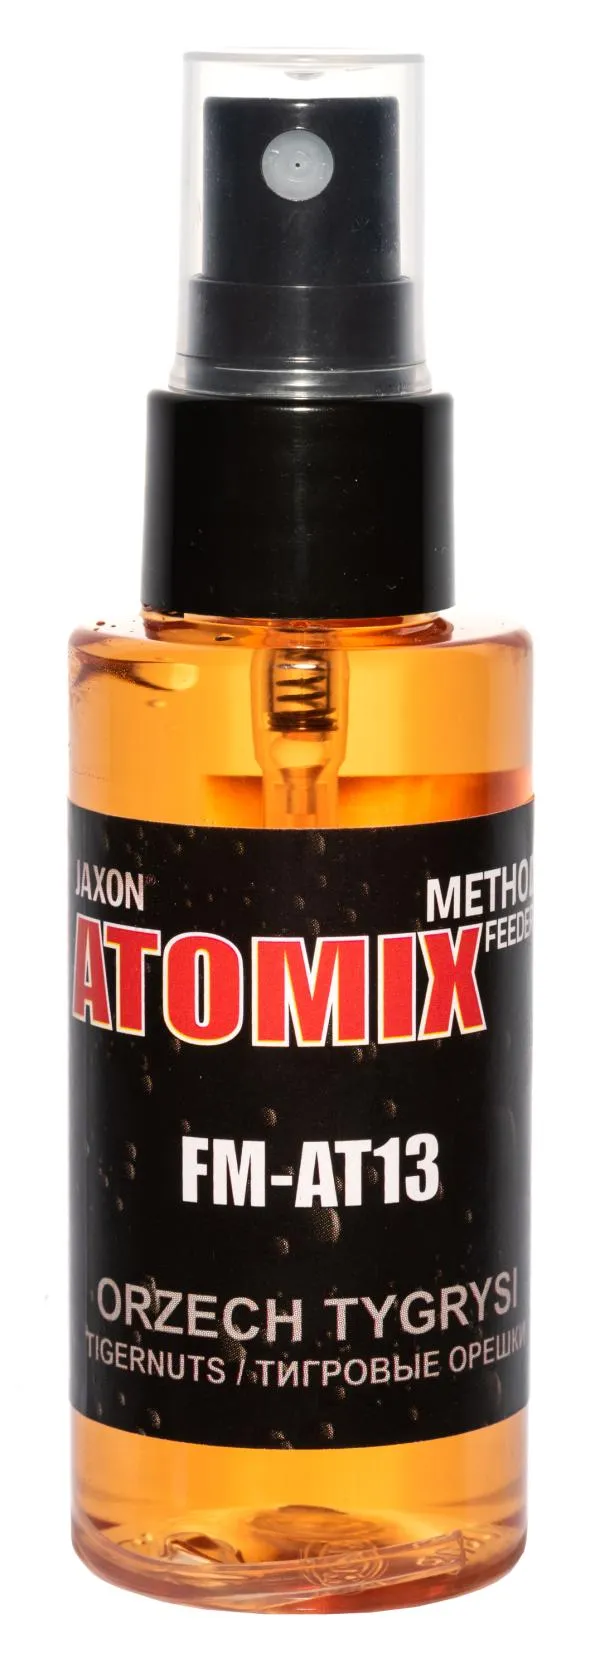 JAXON ATOMIX - TIGRISMOGYORÓ 50g aroma